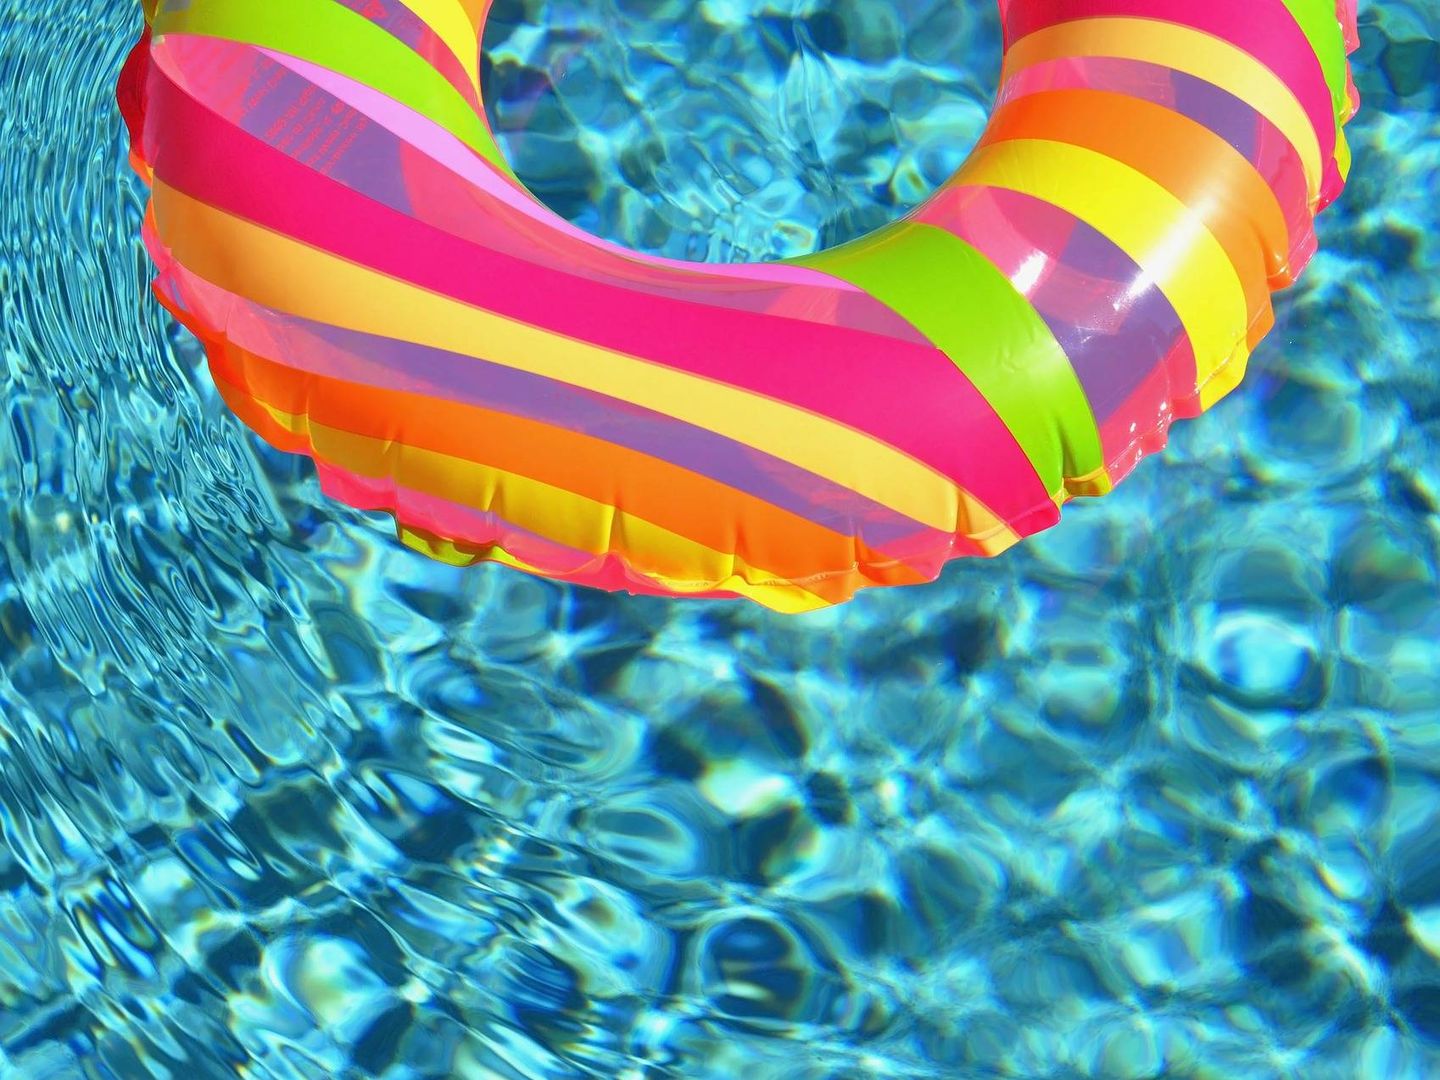 Un flotador, en una piscina. (Pixabay)